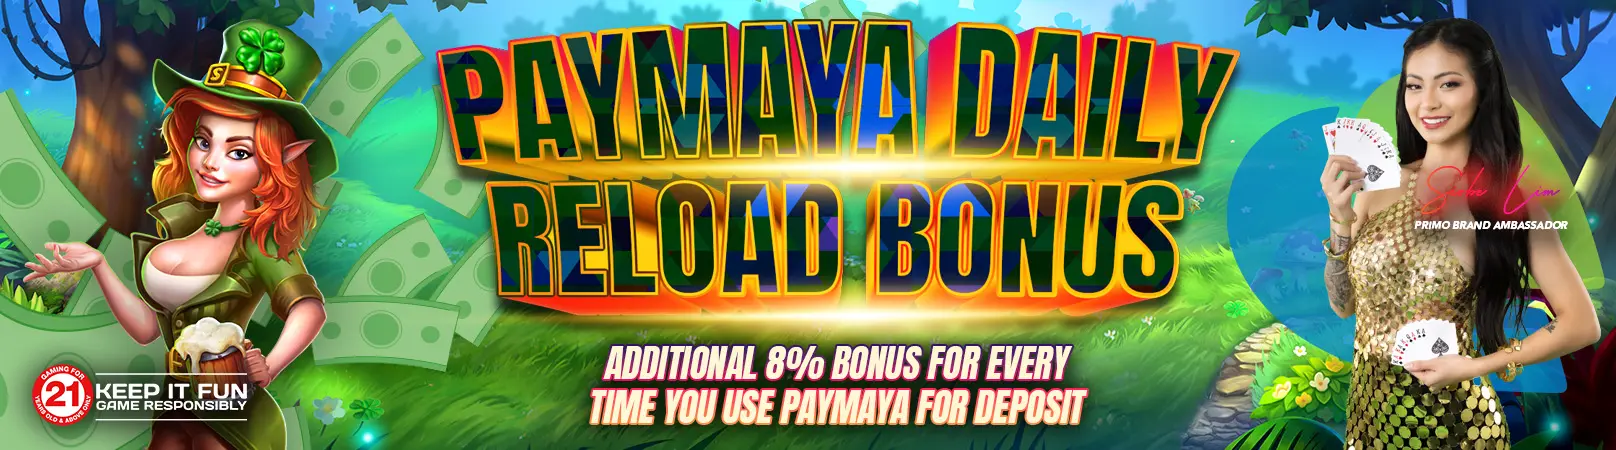 Paymaya Daily Reload Bonus